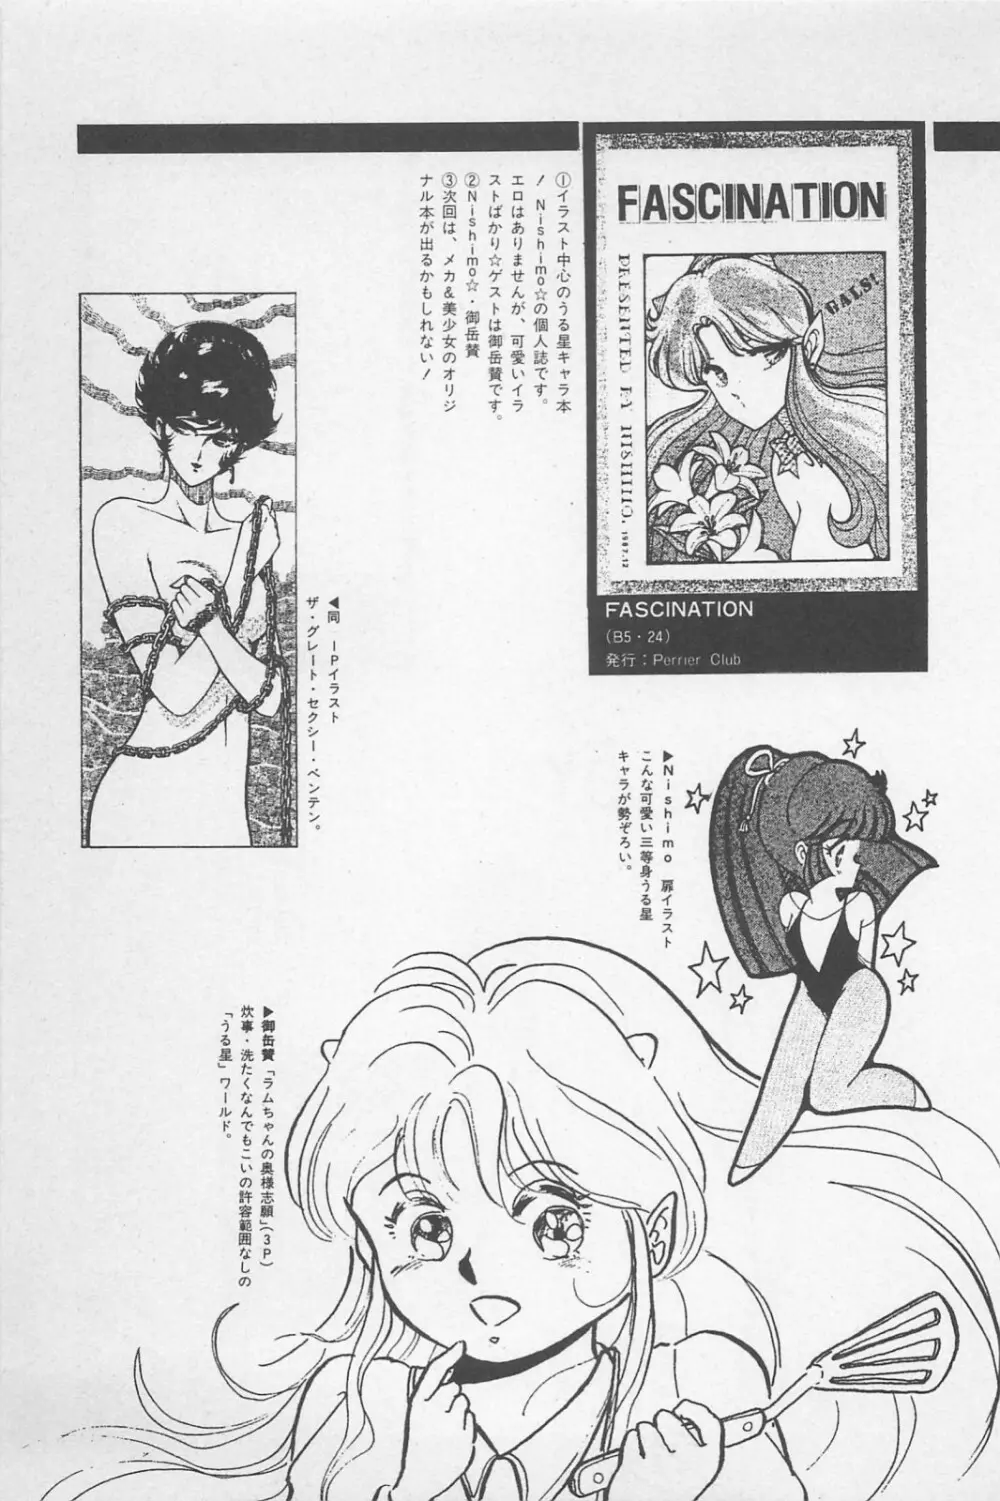 美少女症候群 1985 83ページ